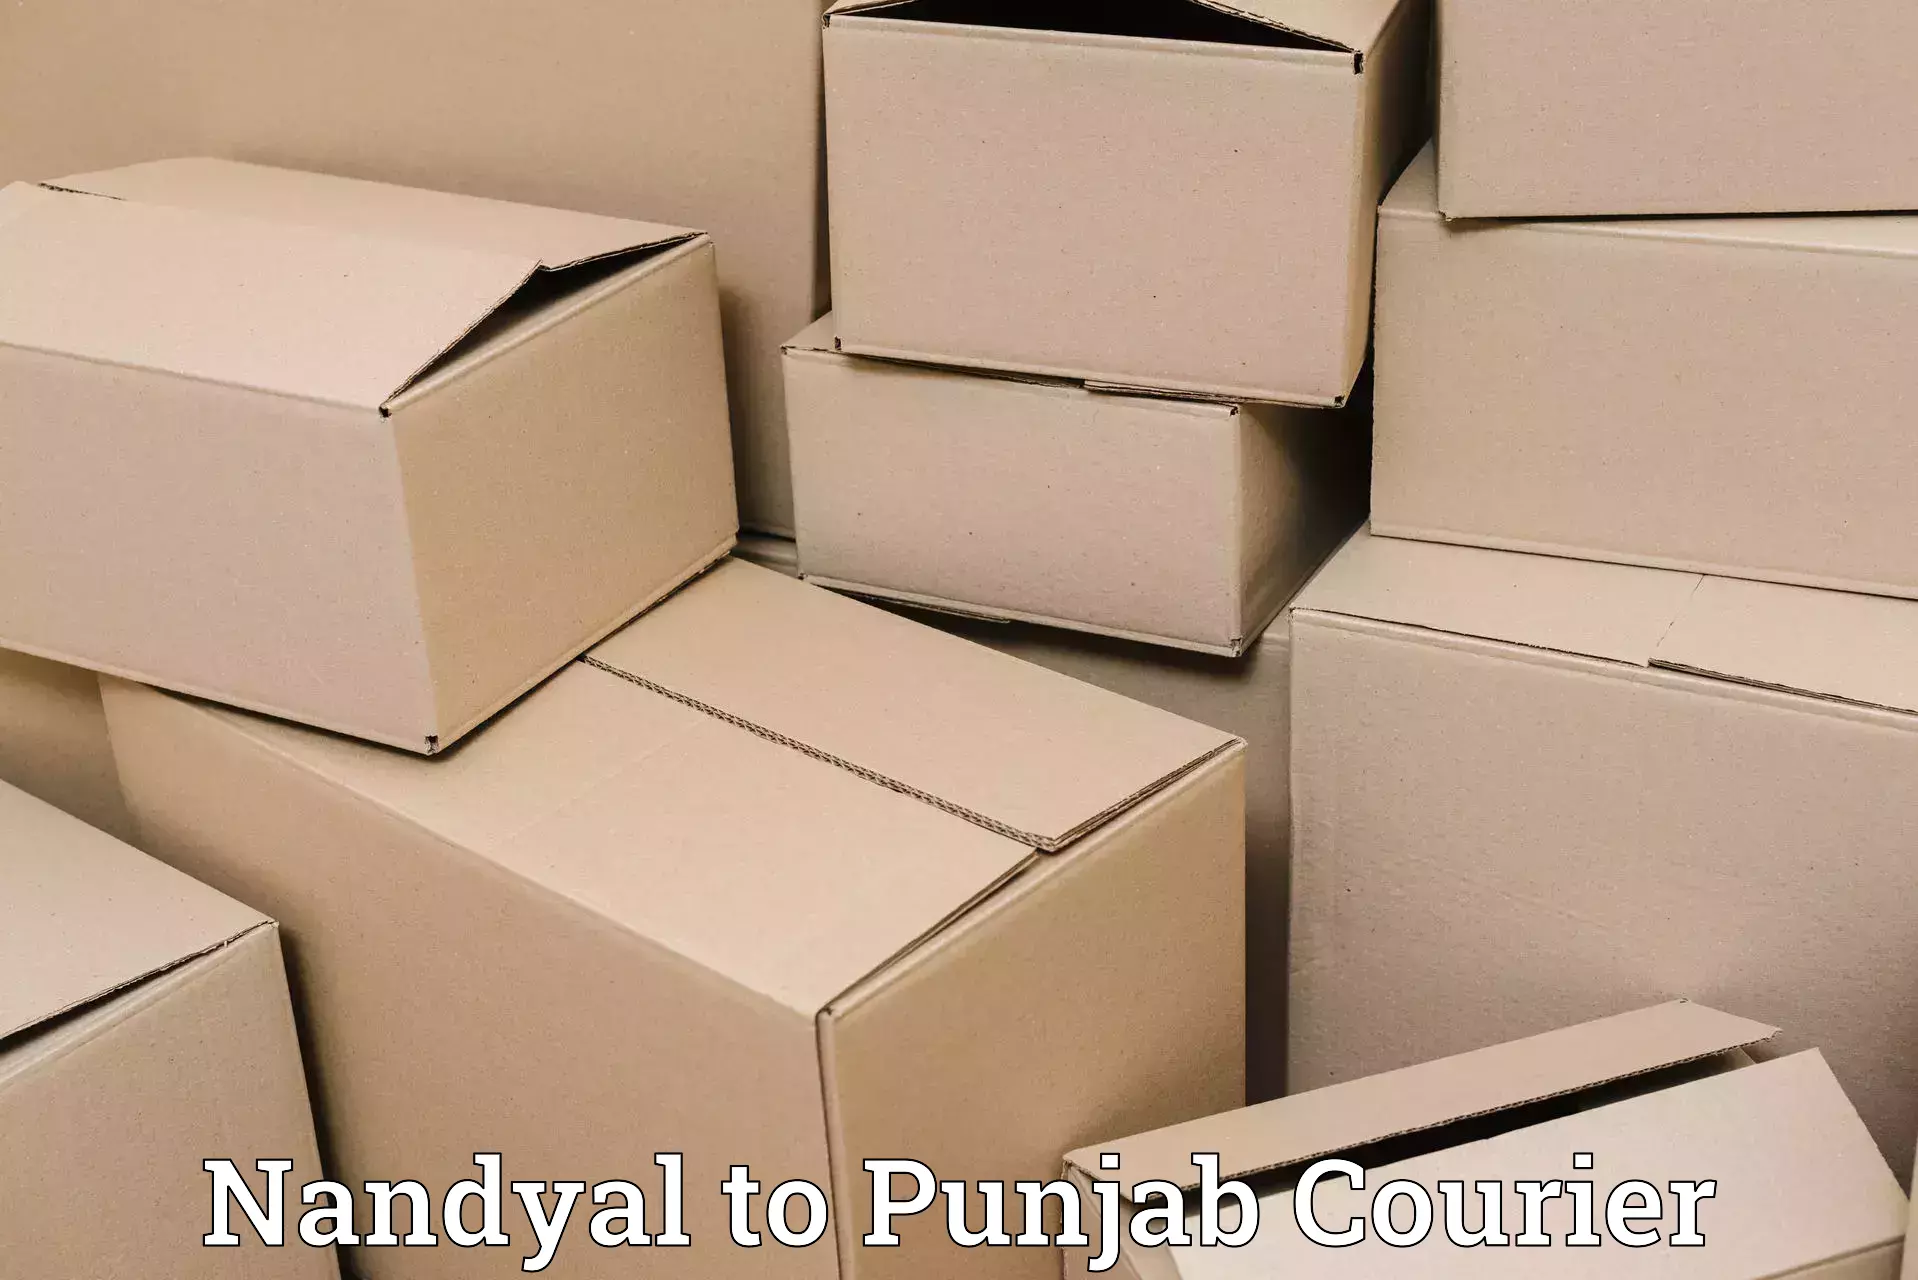 Domestic courier Nandyal to Anandpur Sahib